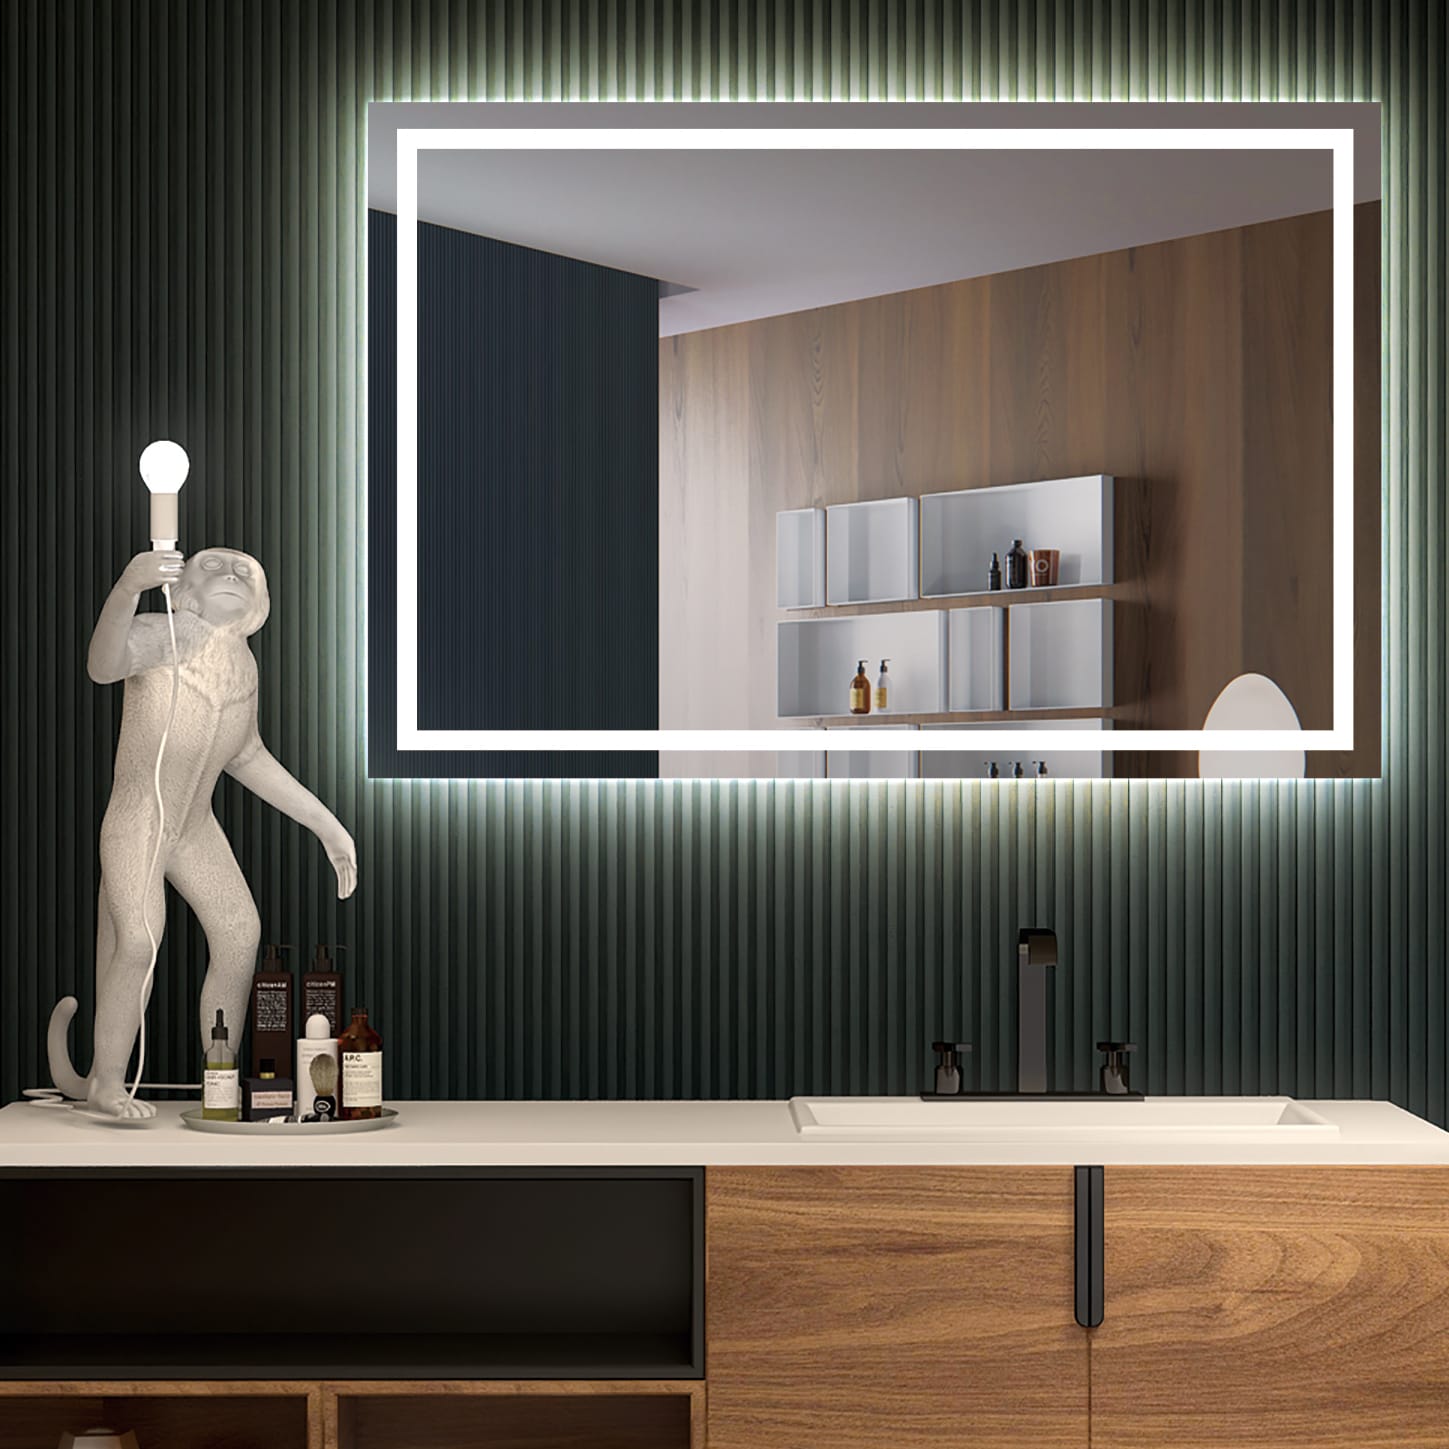 Espejo De Bano Celle Blanco 80 X 70 X 3,4 – Los muebles mas baratos